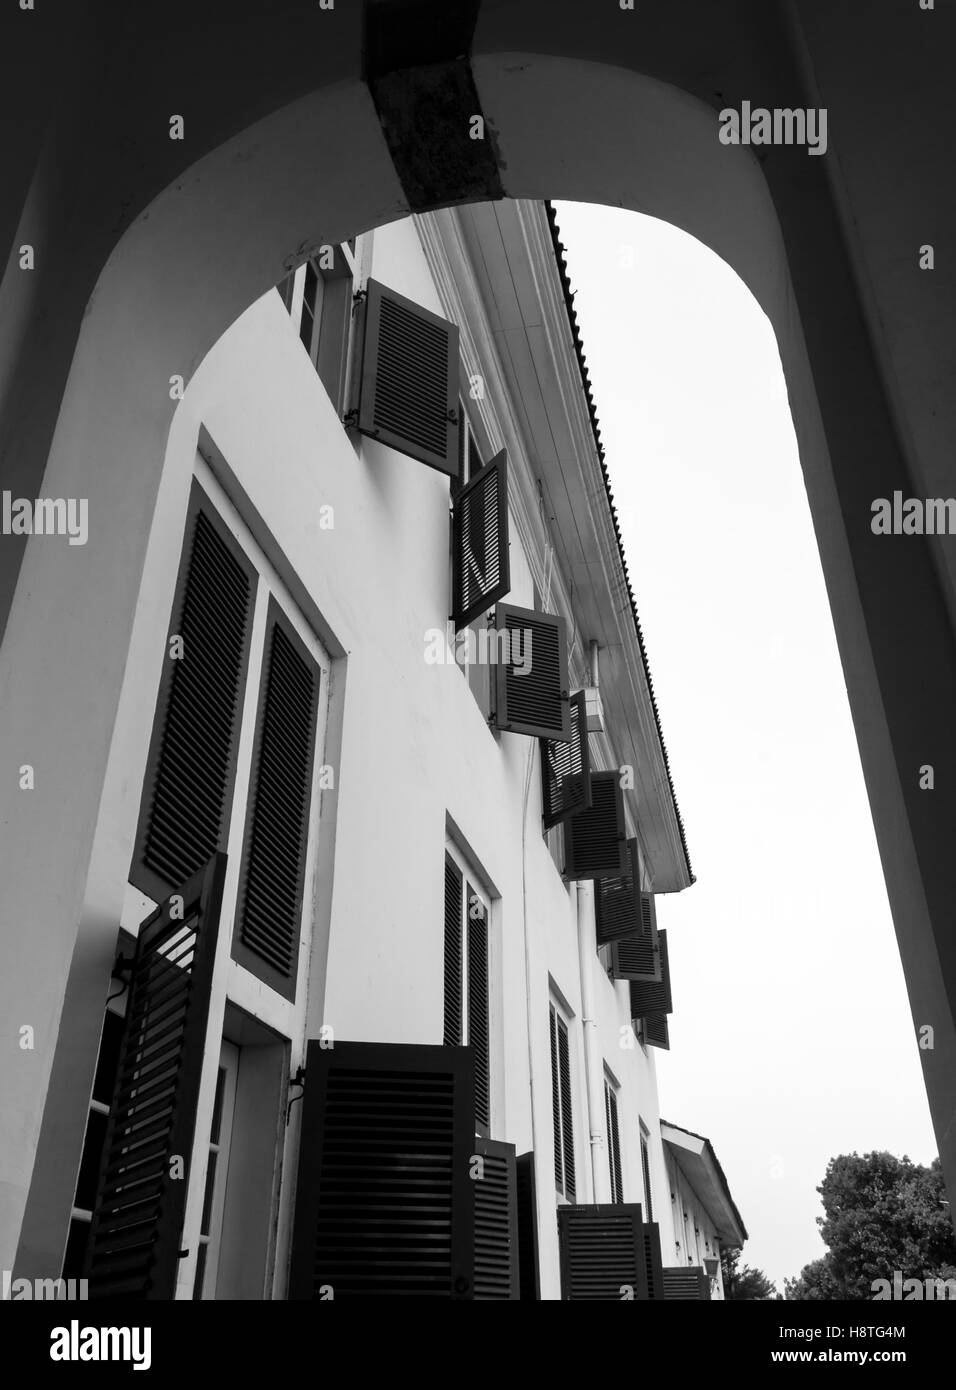 Fila di finestre al piano superiore dell'edificio vista dall'esterno al piano terra attraverso un cancello. La fotografia in bianco e nero. Foto Stock